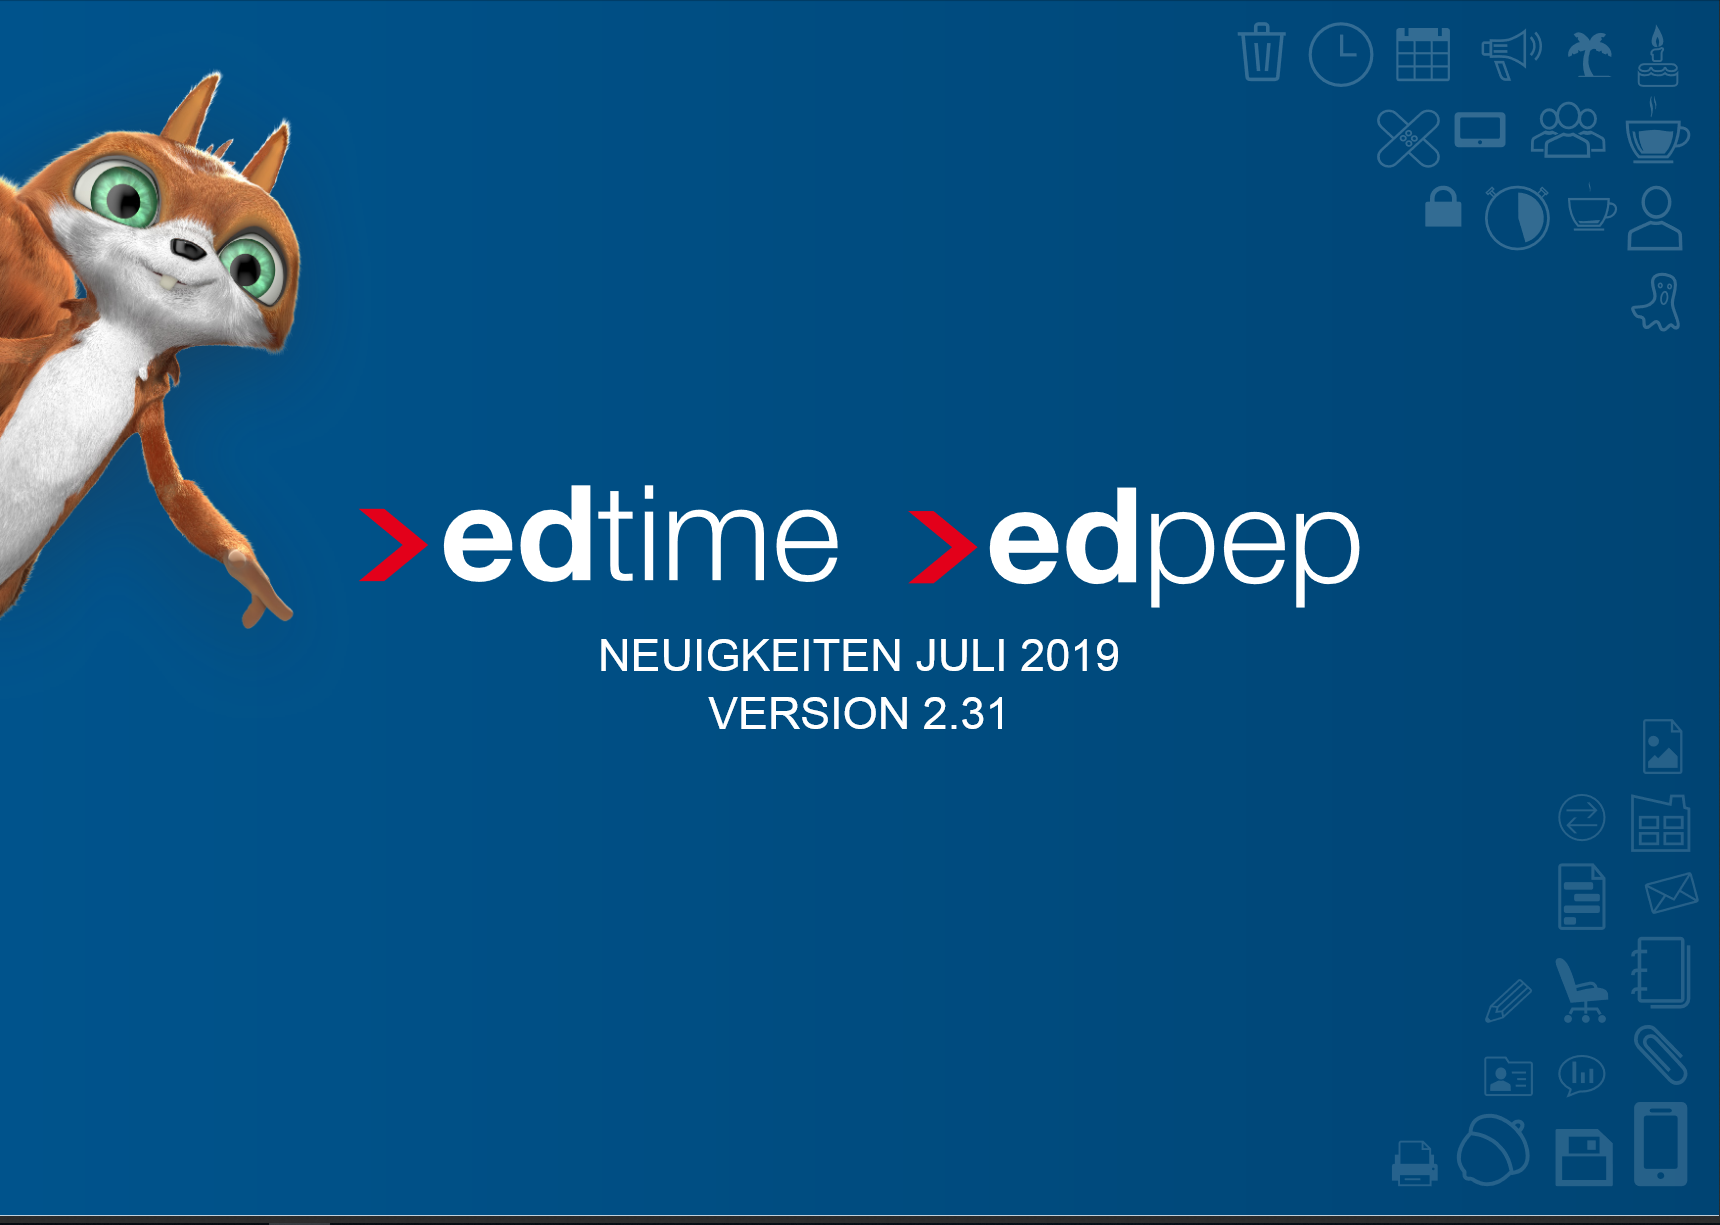 edtime und edpep - Release 2.31 enthält neue Beschäftigungsart